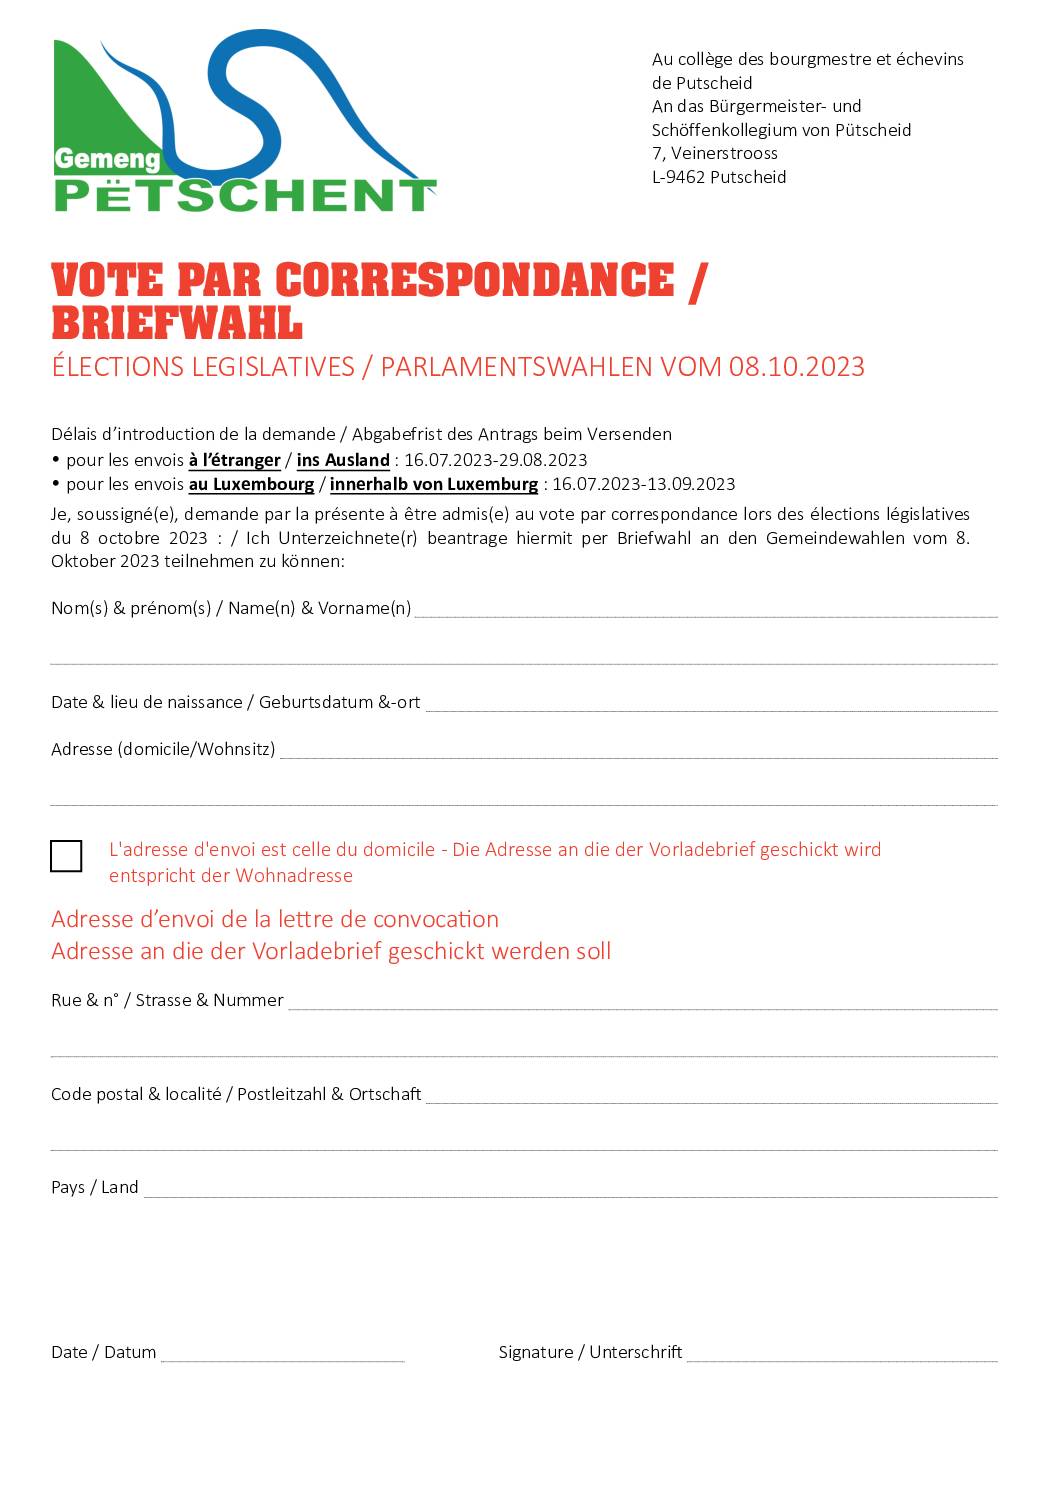 Demande vote par correspondance - Antrag auf Briefwahl 08.10.2023 Elections législatives - Parlamentswahlen